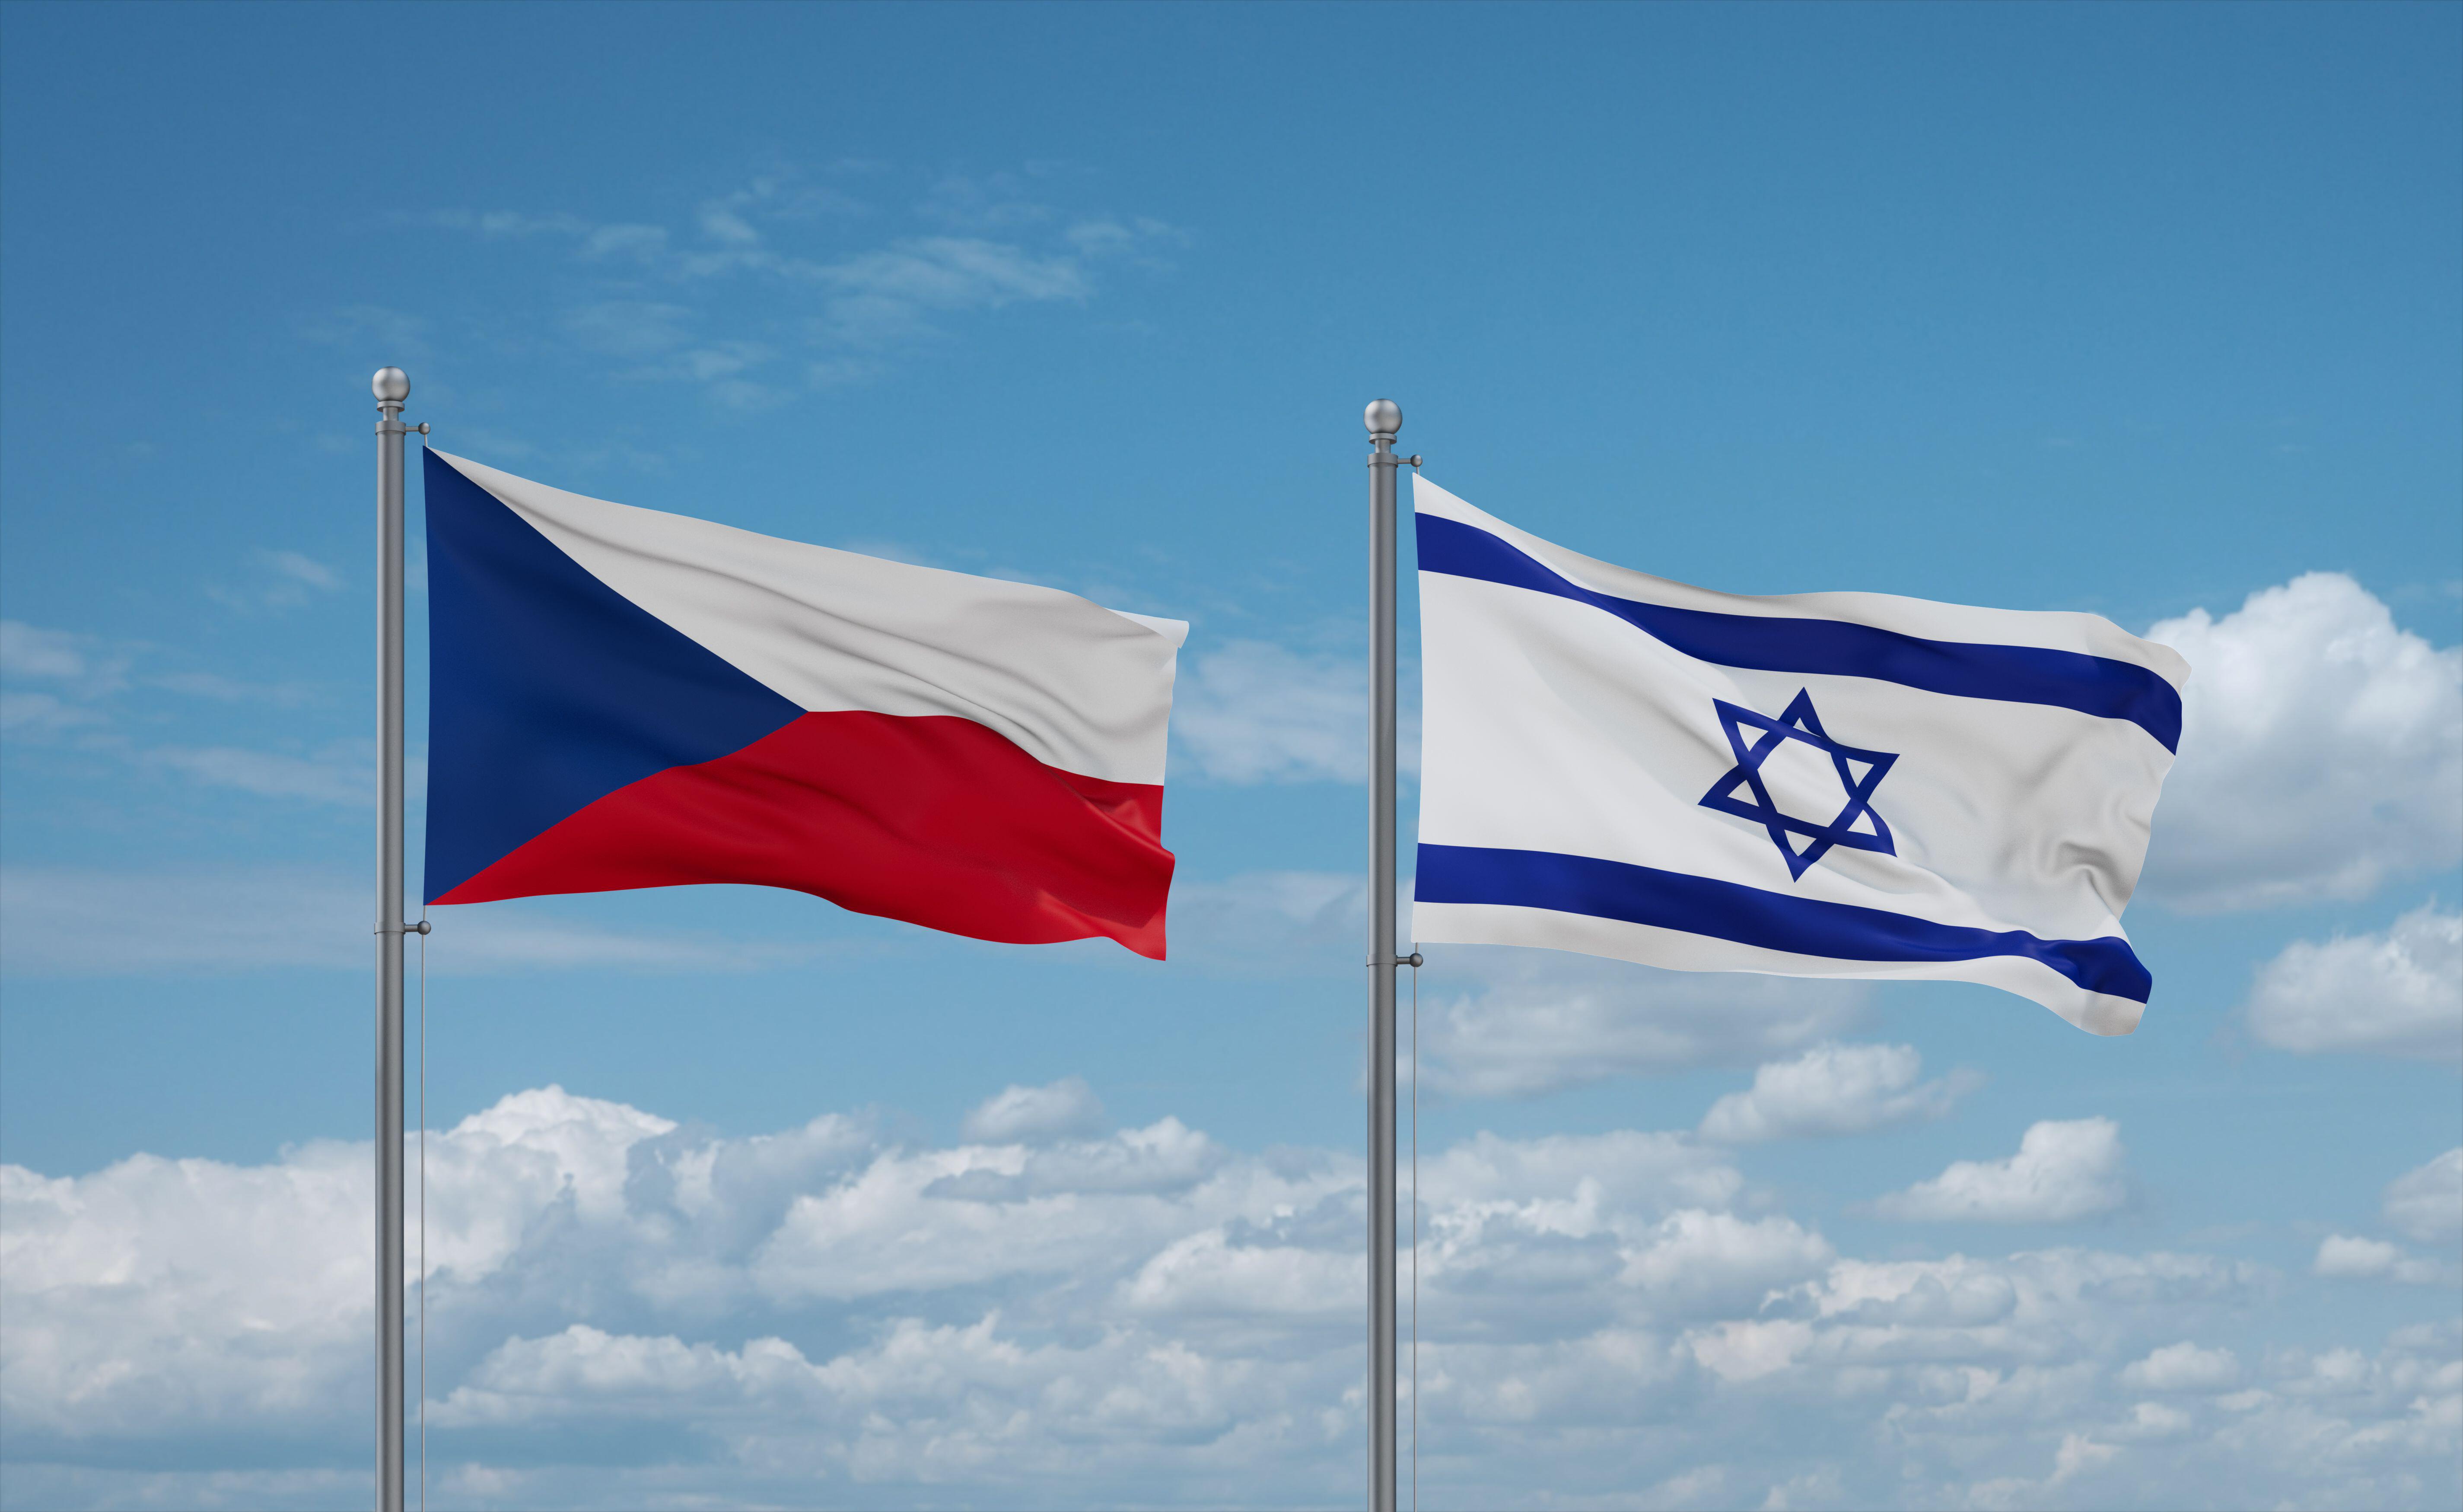 以色列和捷克共和国在哈马斯战争中加强网络合作柏拉图区块链数据情报。垂直搜索。人工智能。